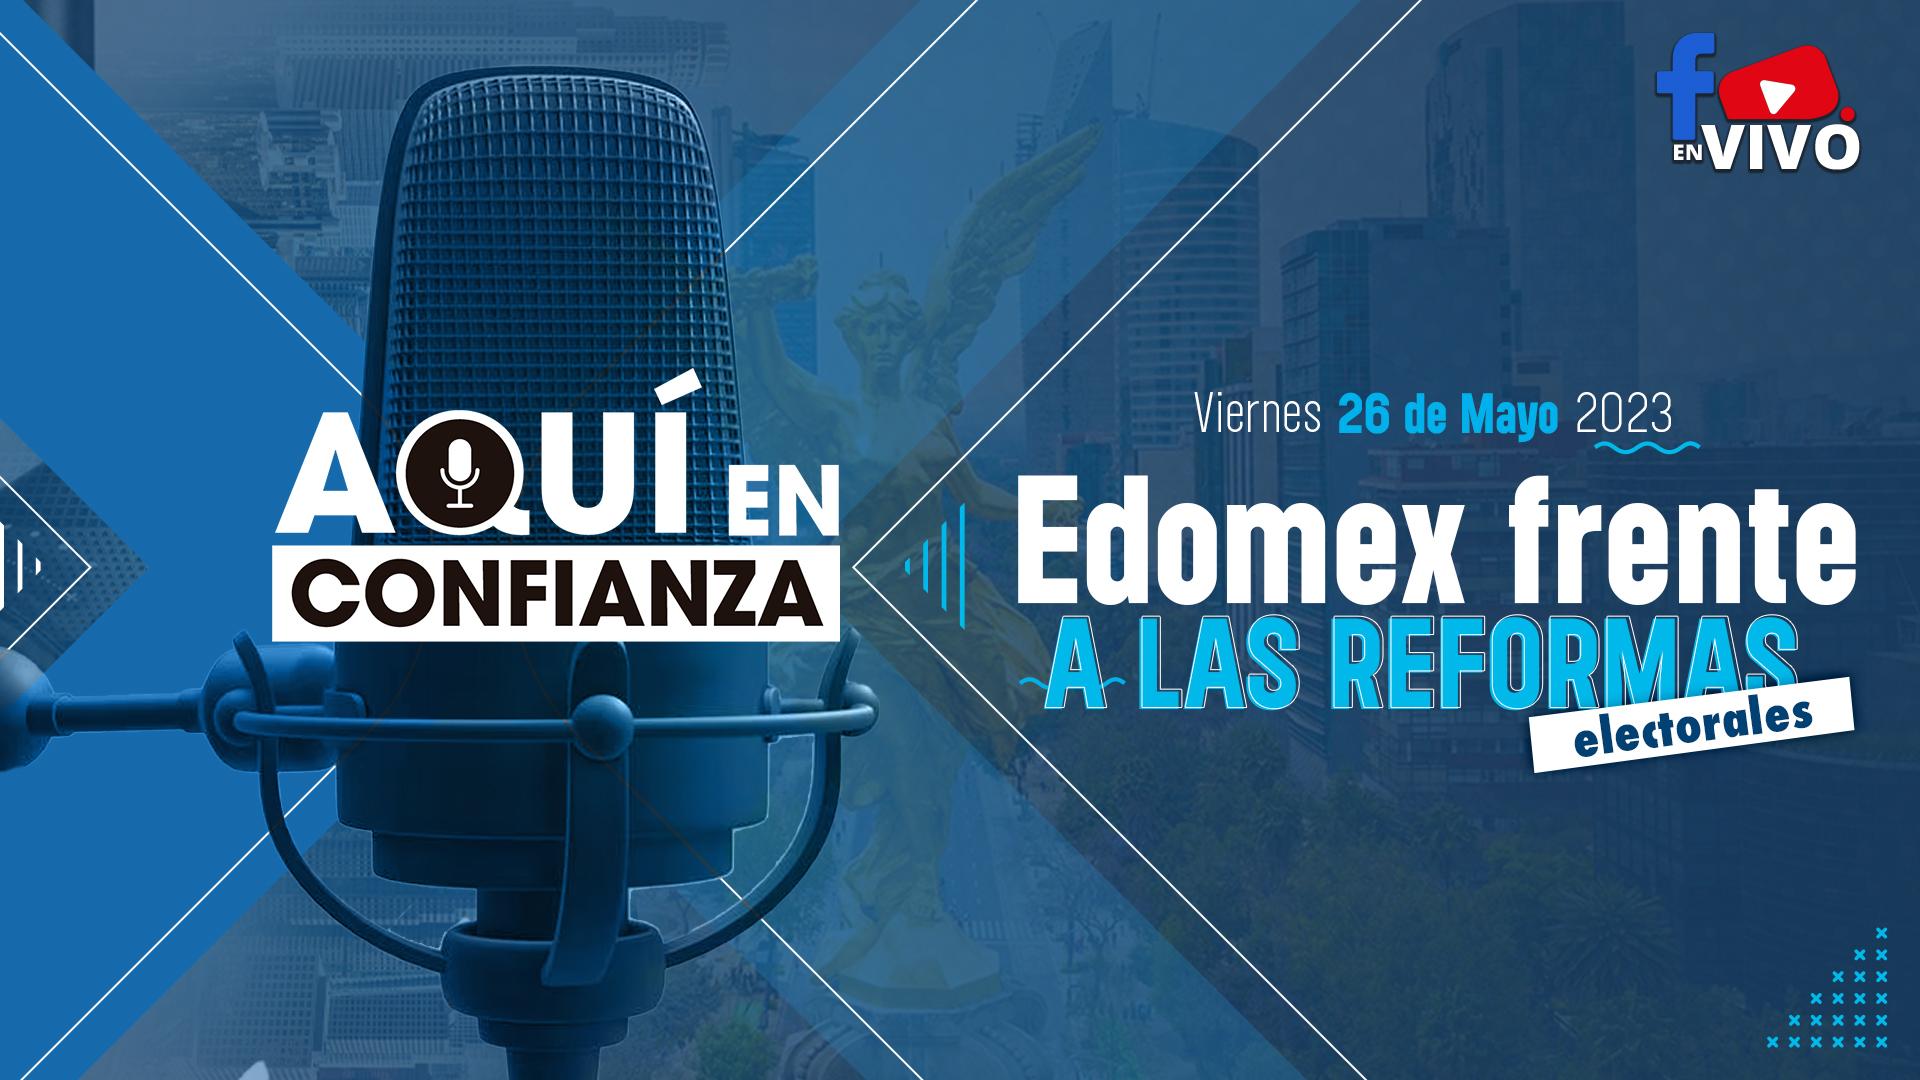 edomex-reformas-electorales-aqui-en-confianza